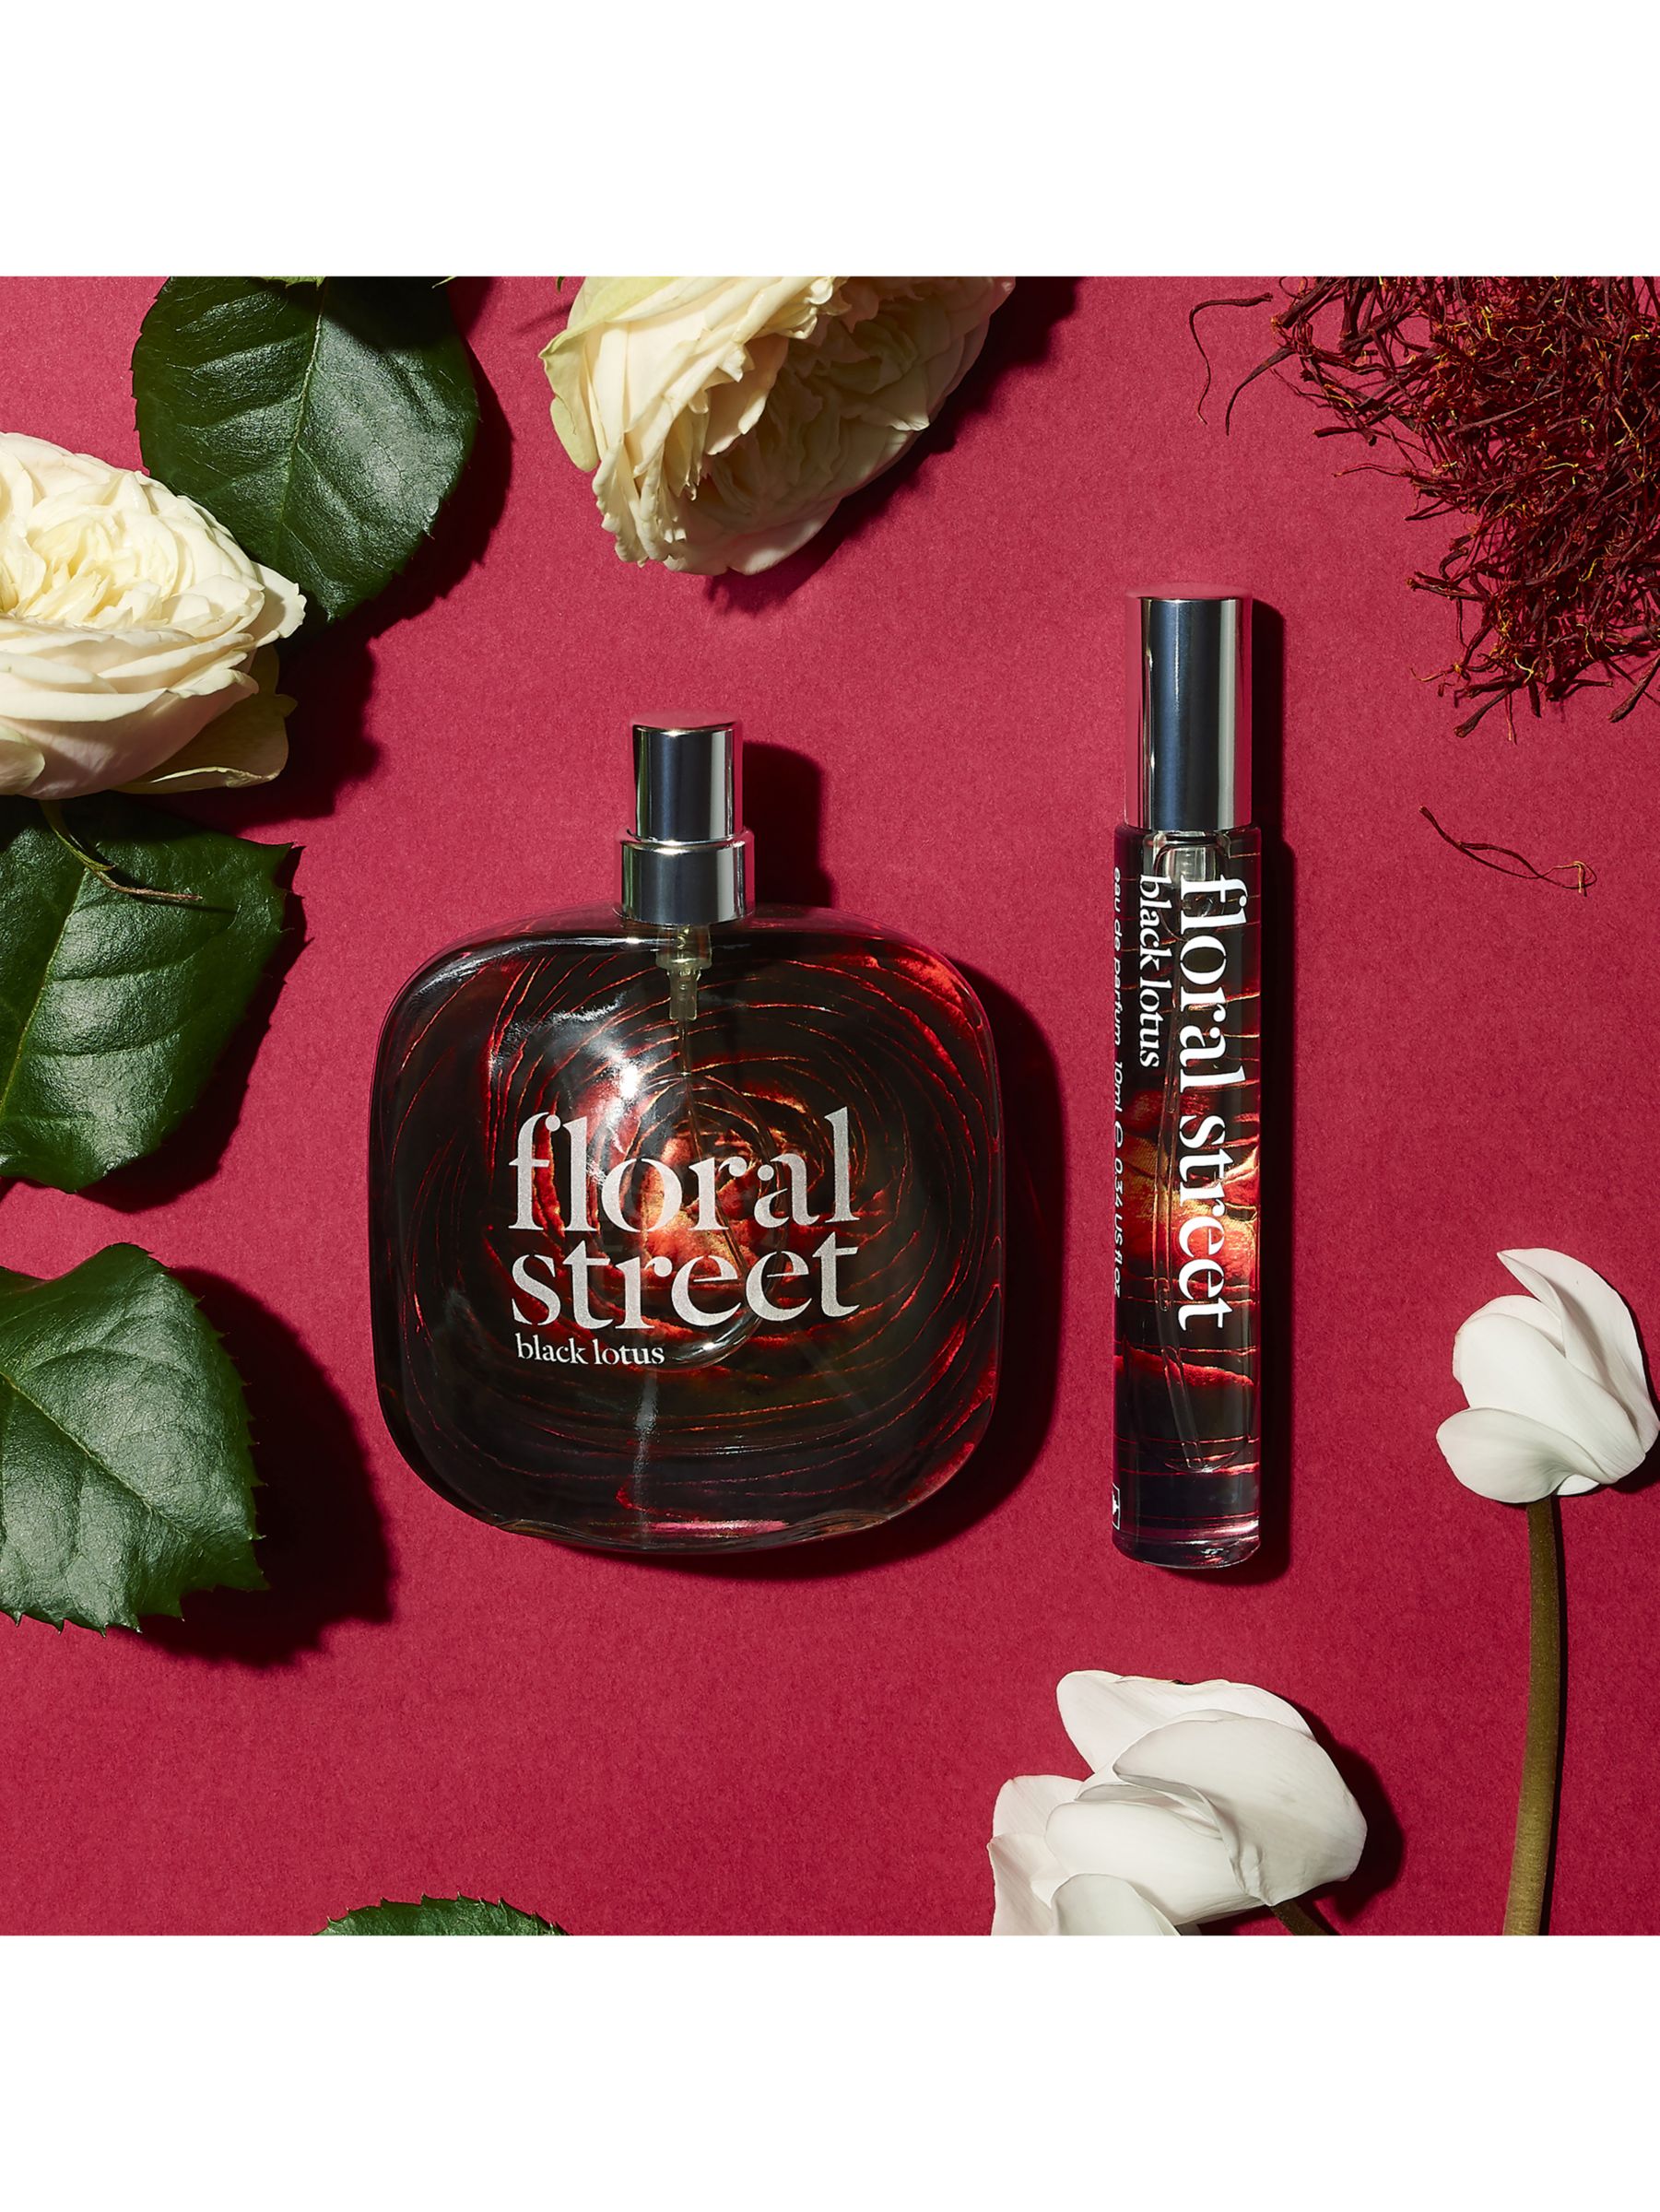 Floral Street Black Lotus Eau de Parfum, 50ml at John Lewis & Partners